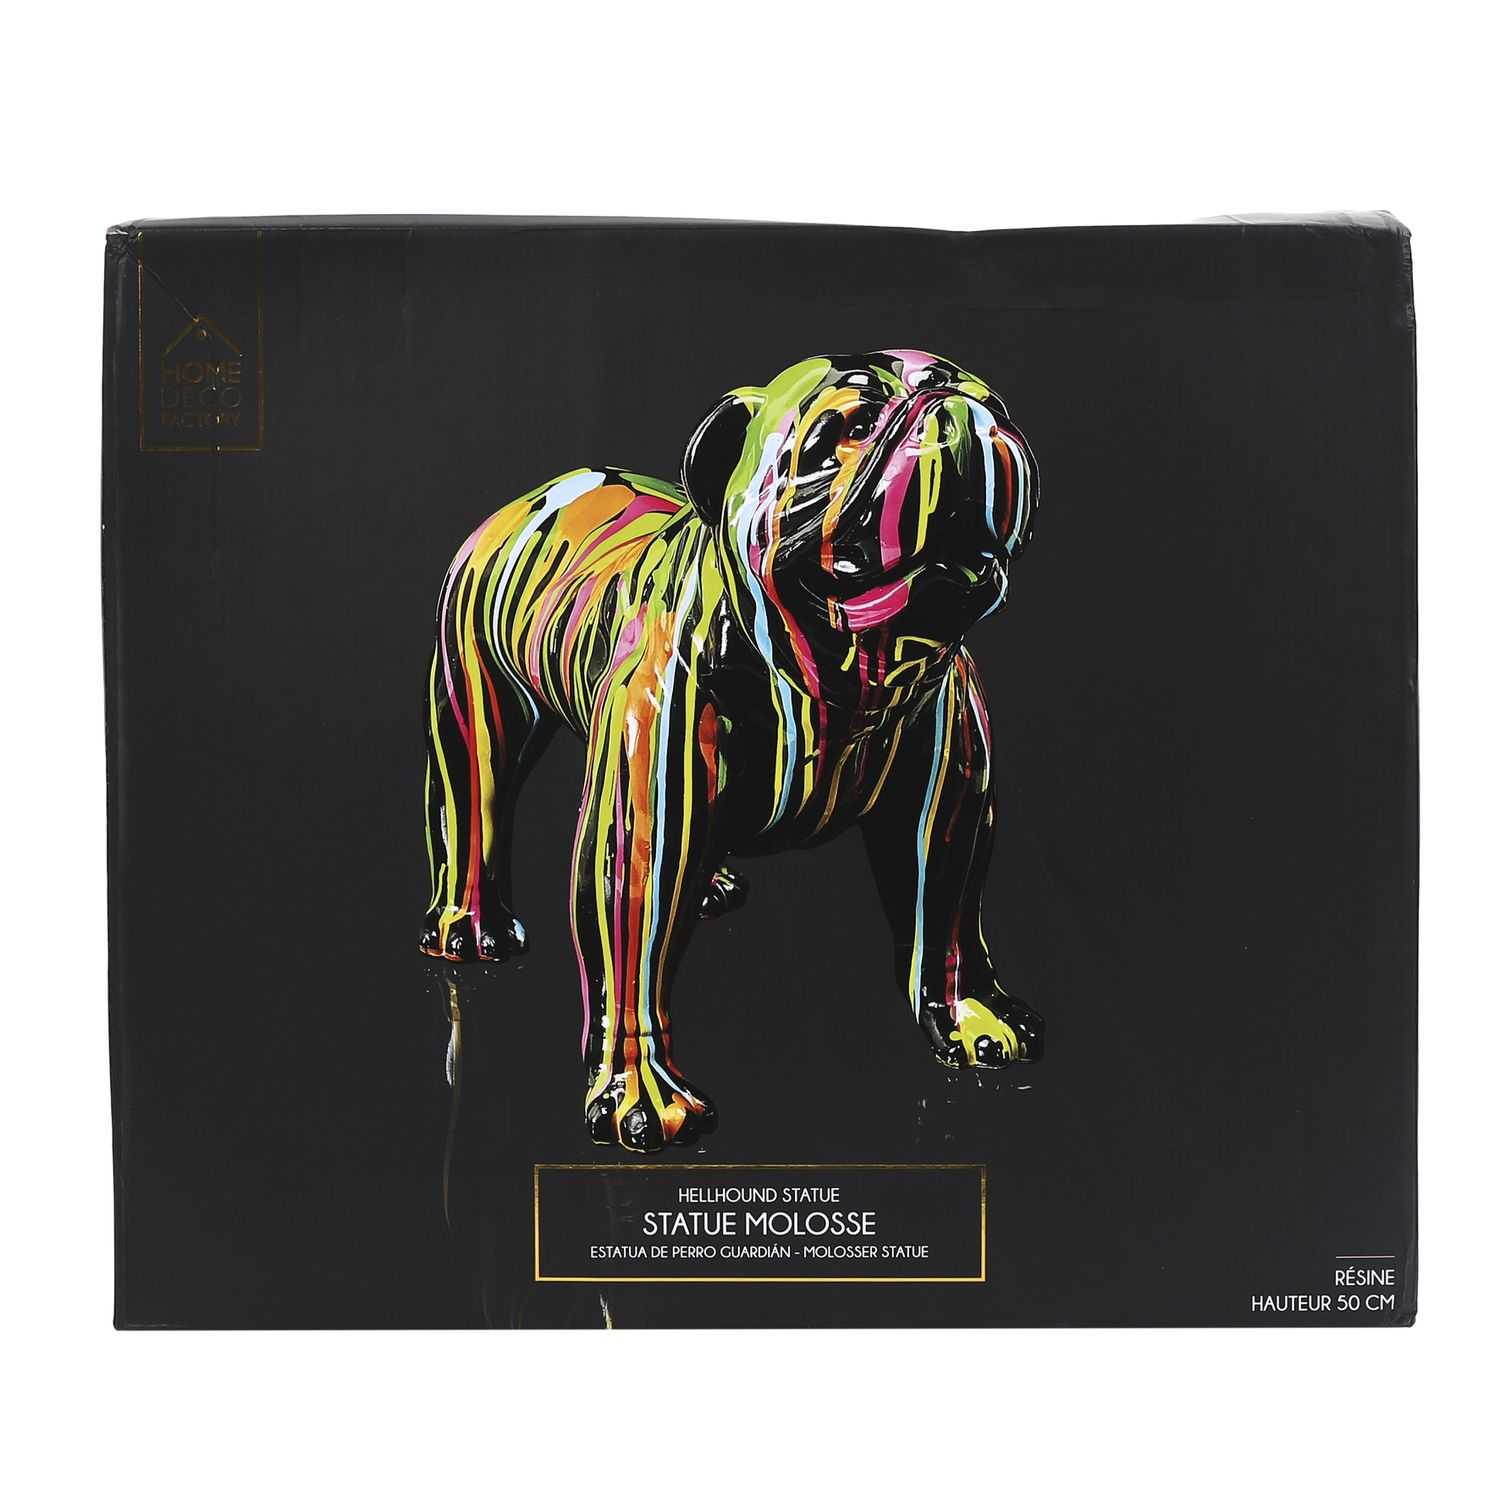 Decoratieve bulldog H50cm Multicolor 